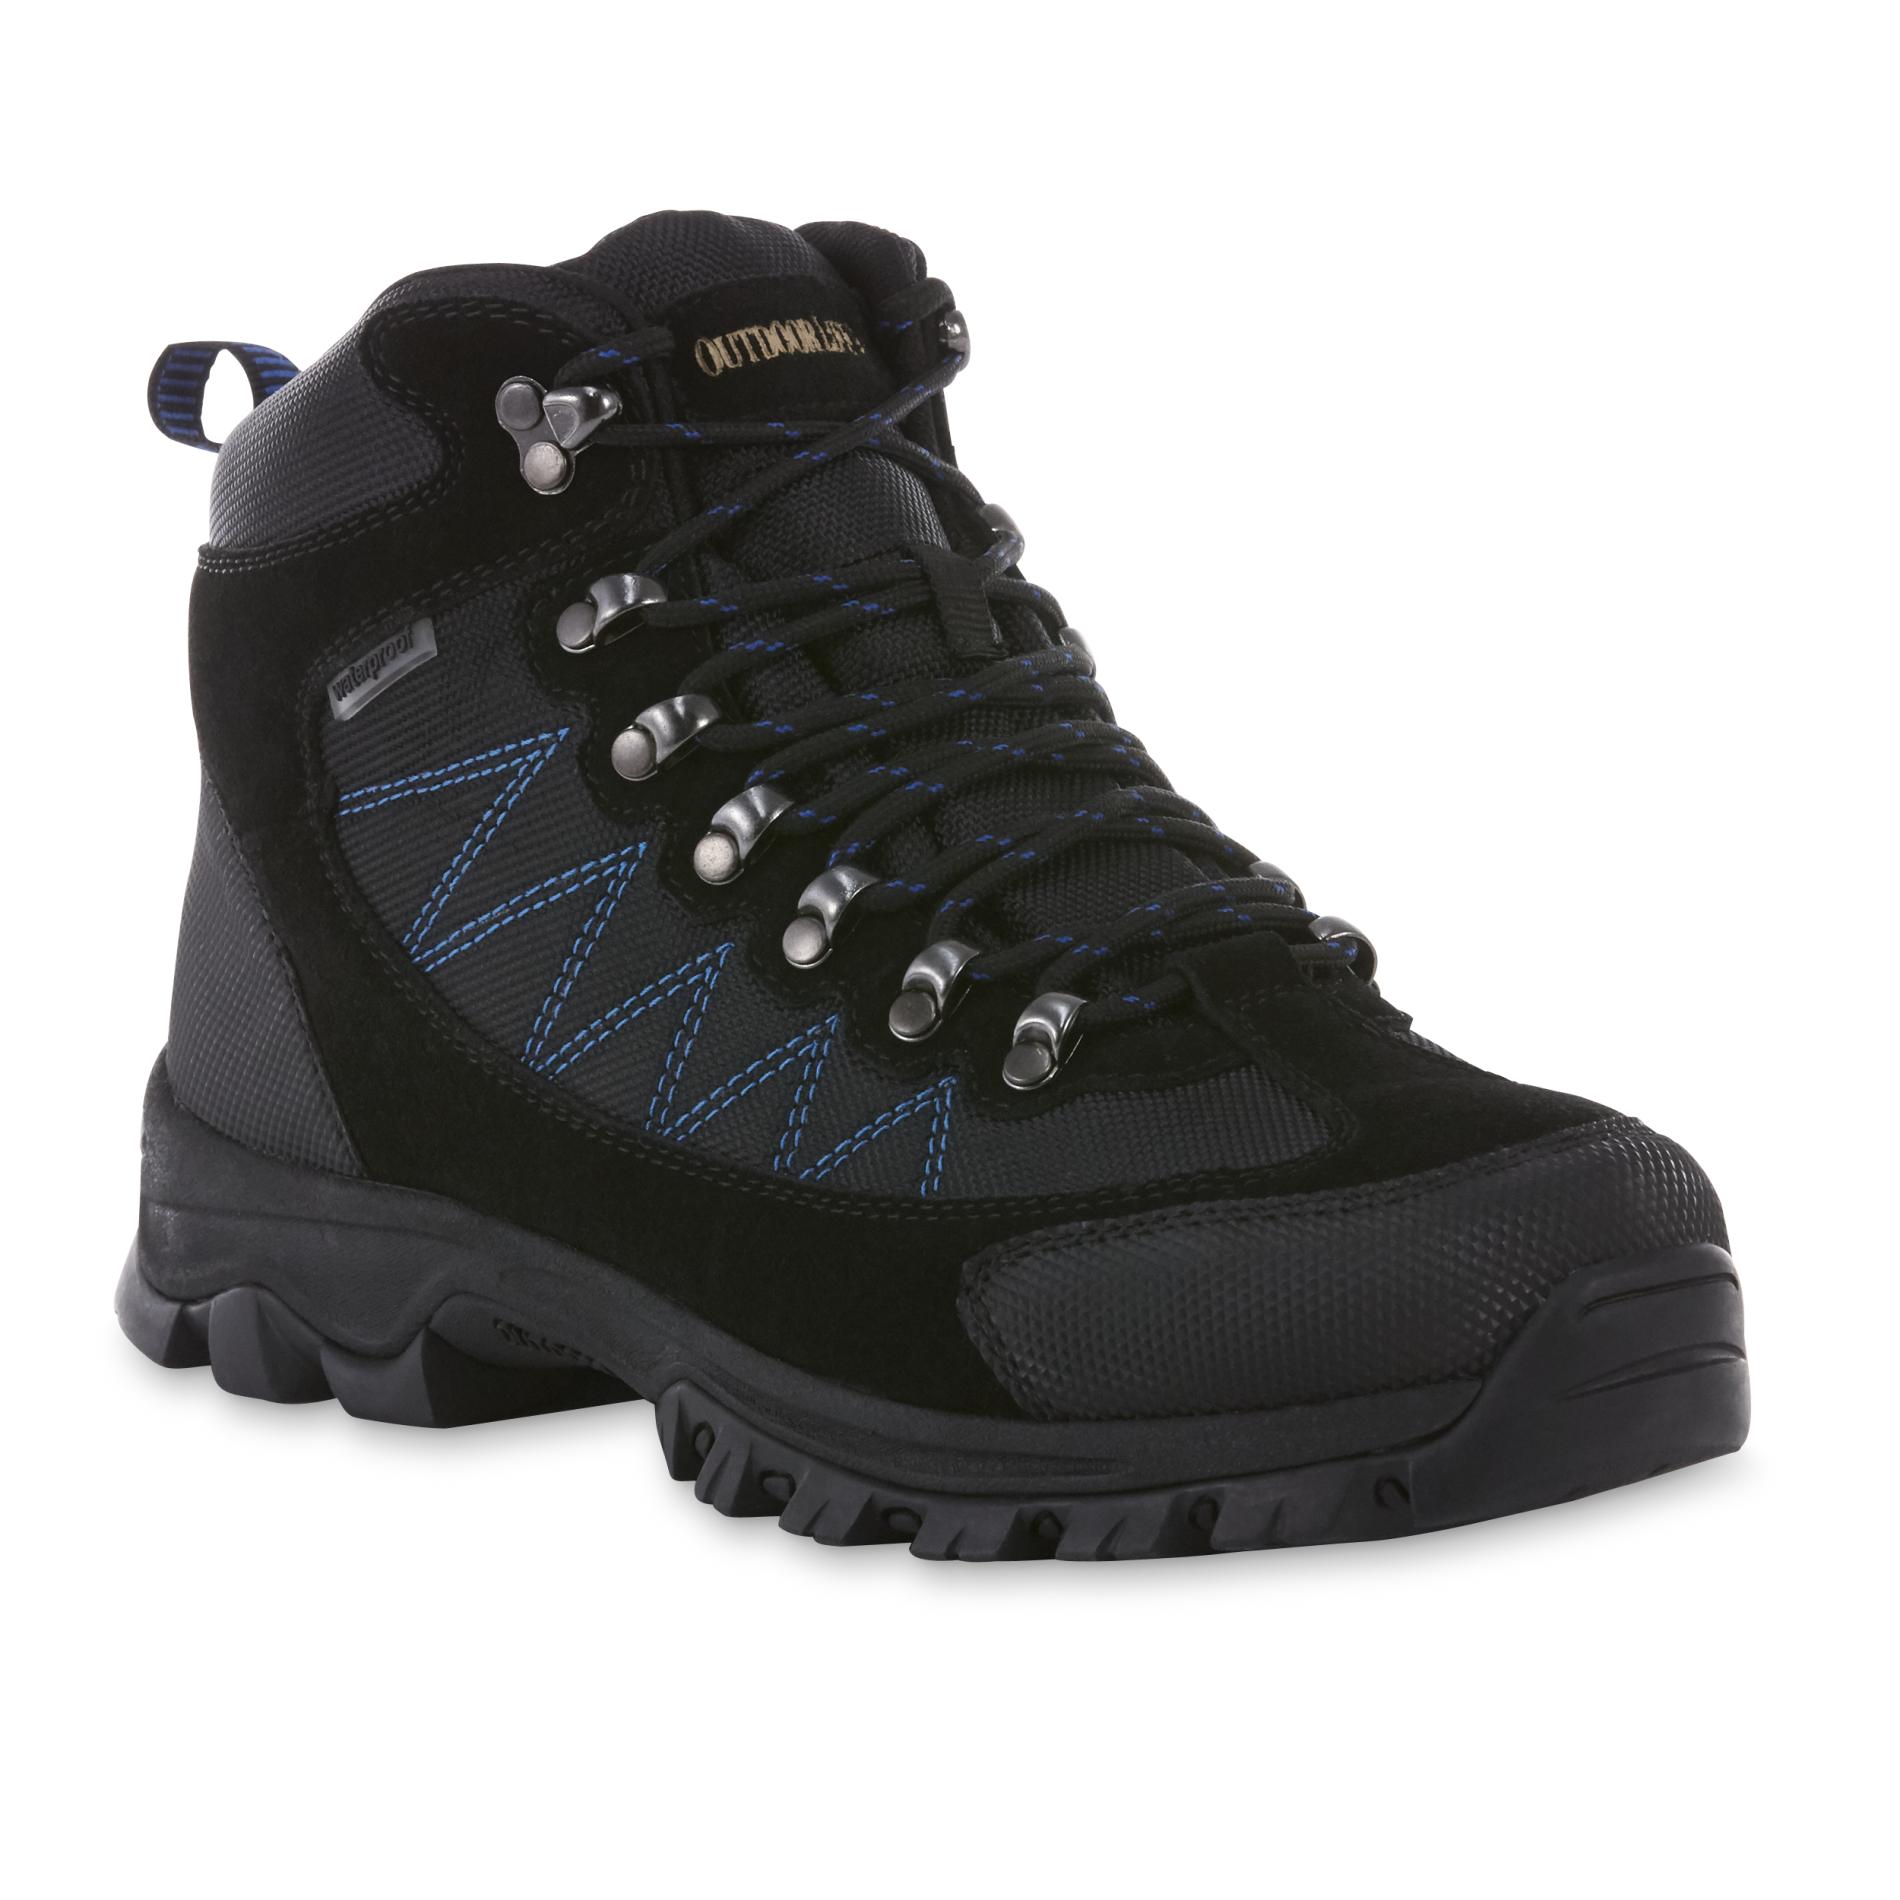 Outdoor Life Men's Bradford Black Waterproof Hiking Boot | Shop Your ...